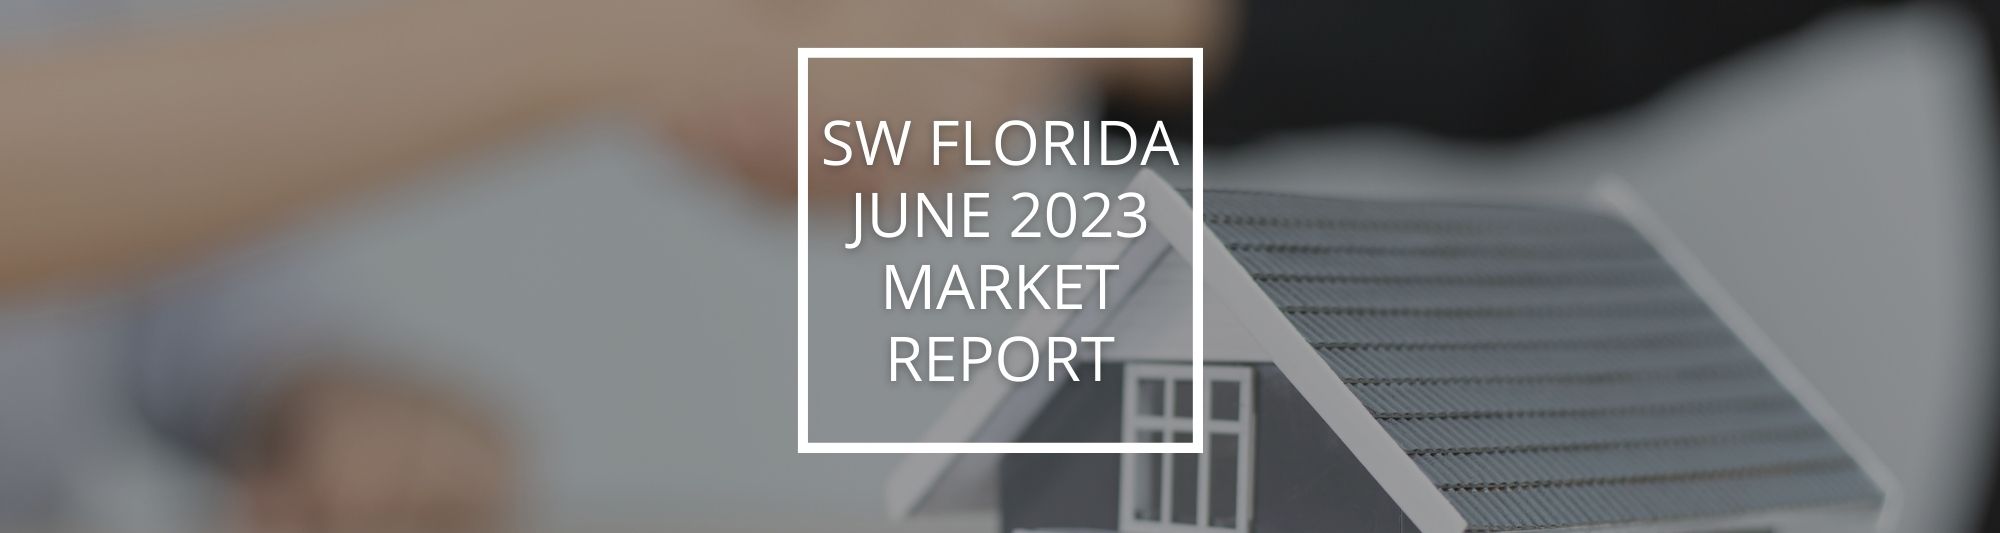 June 2023 Market Report Banner